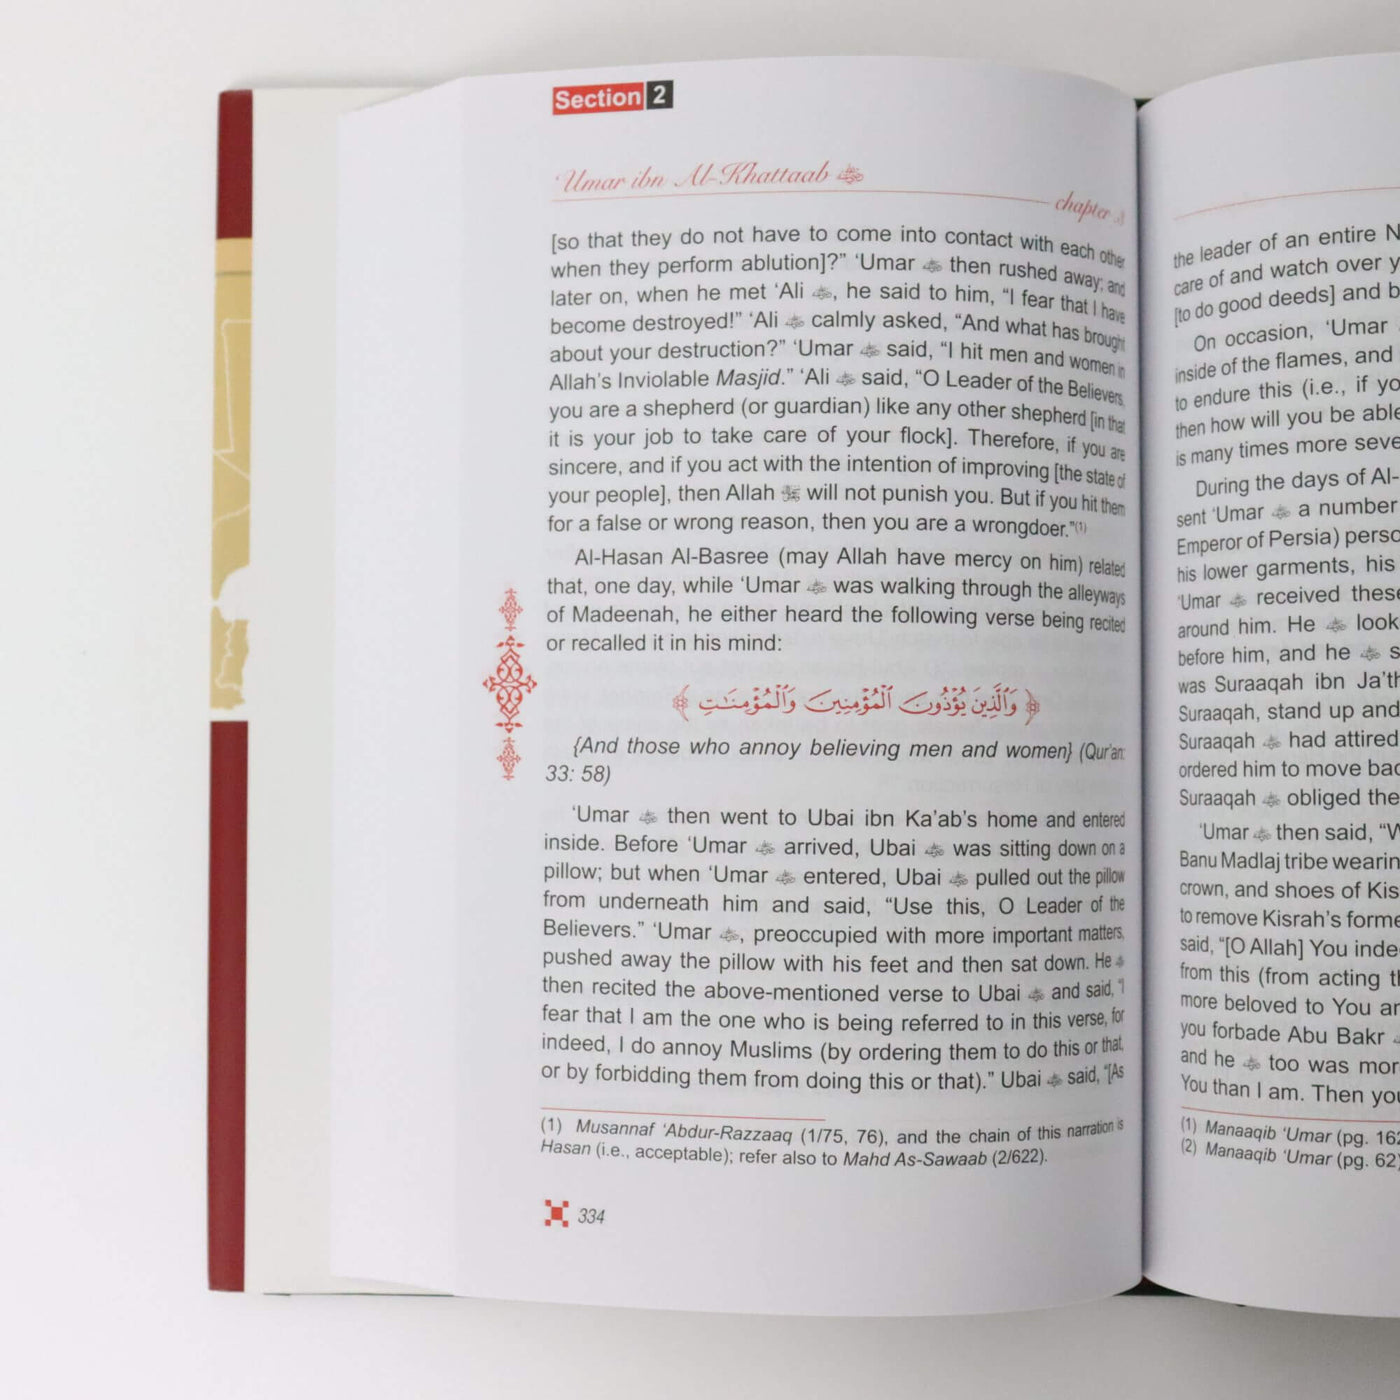 The Biography of Umar Ibn Al Khattab (2 Vol.Set)